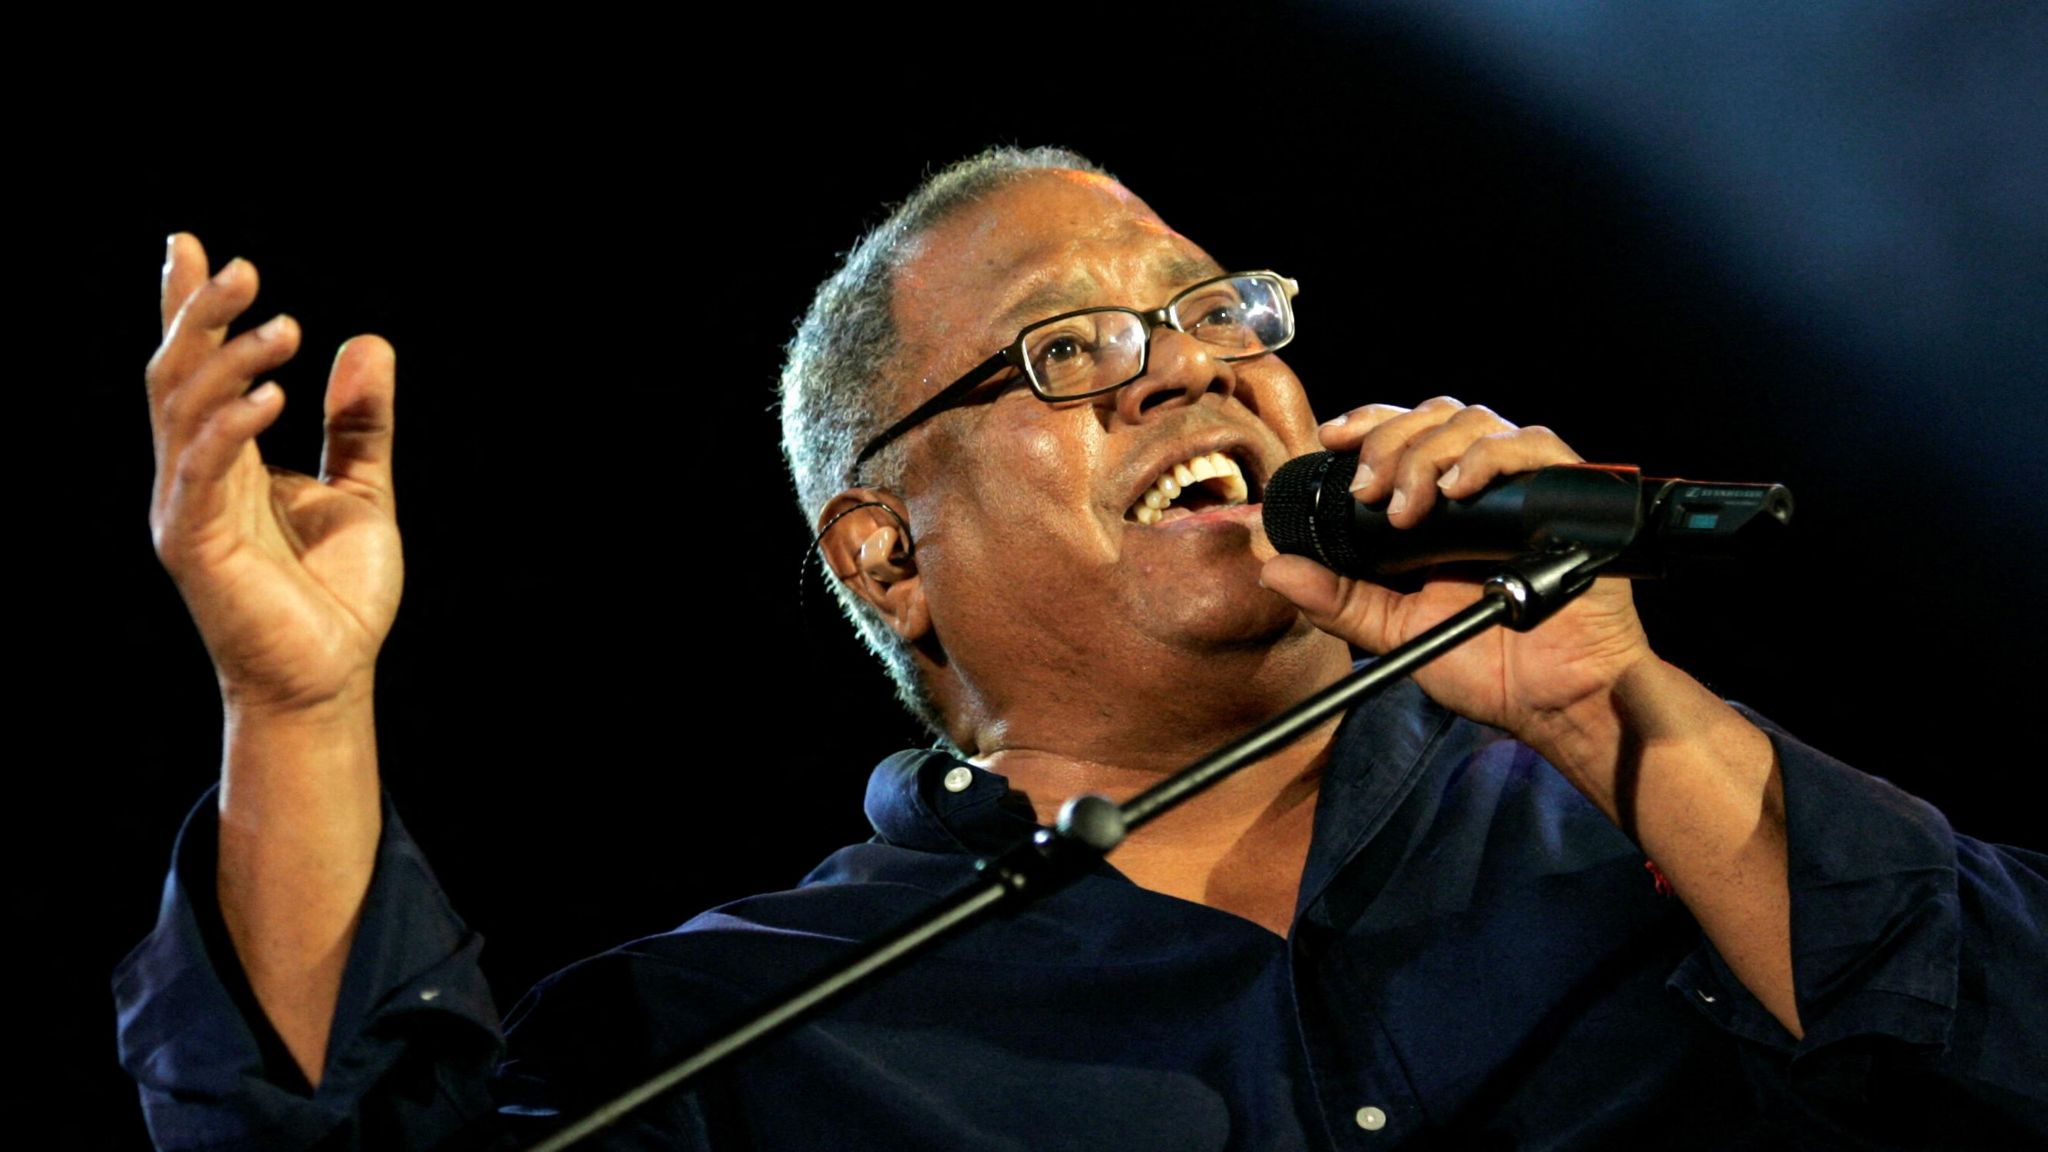 Pablo Milanés: Cuban music legend dies aged 79 - BBC